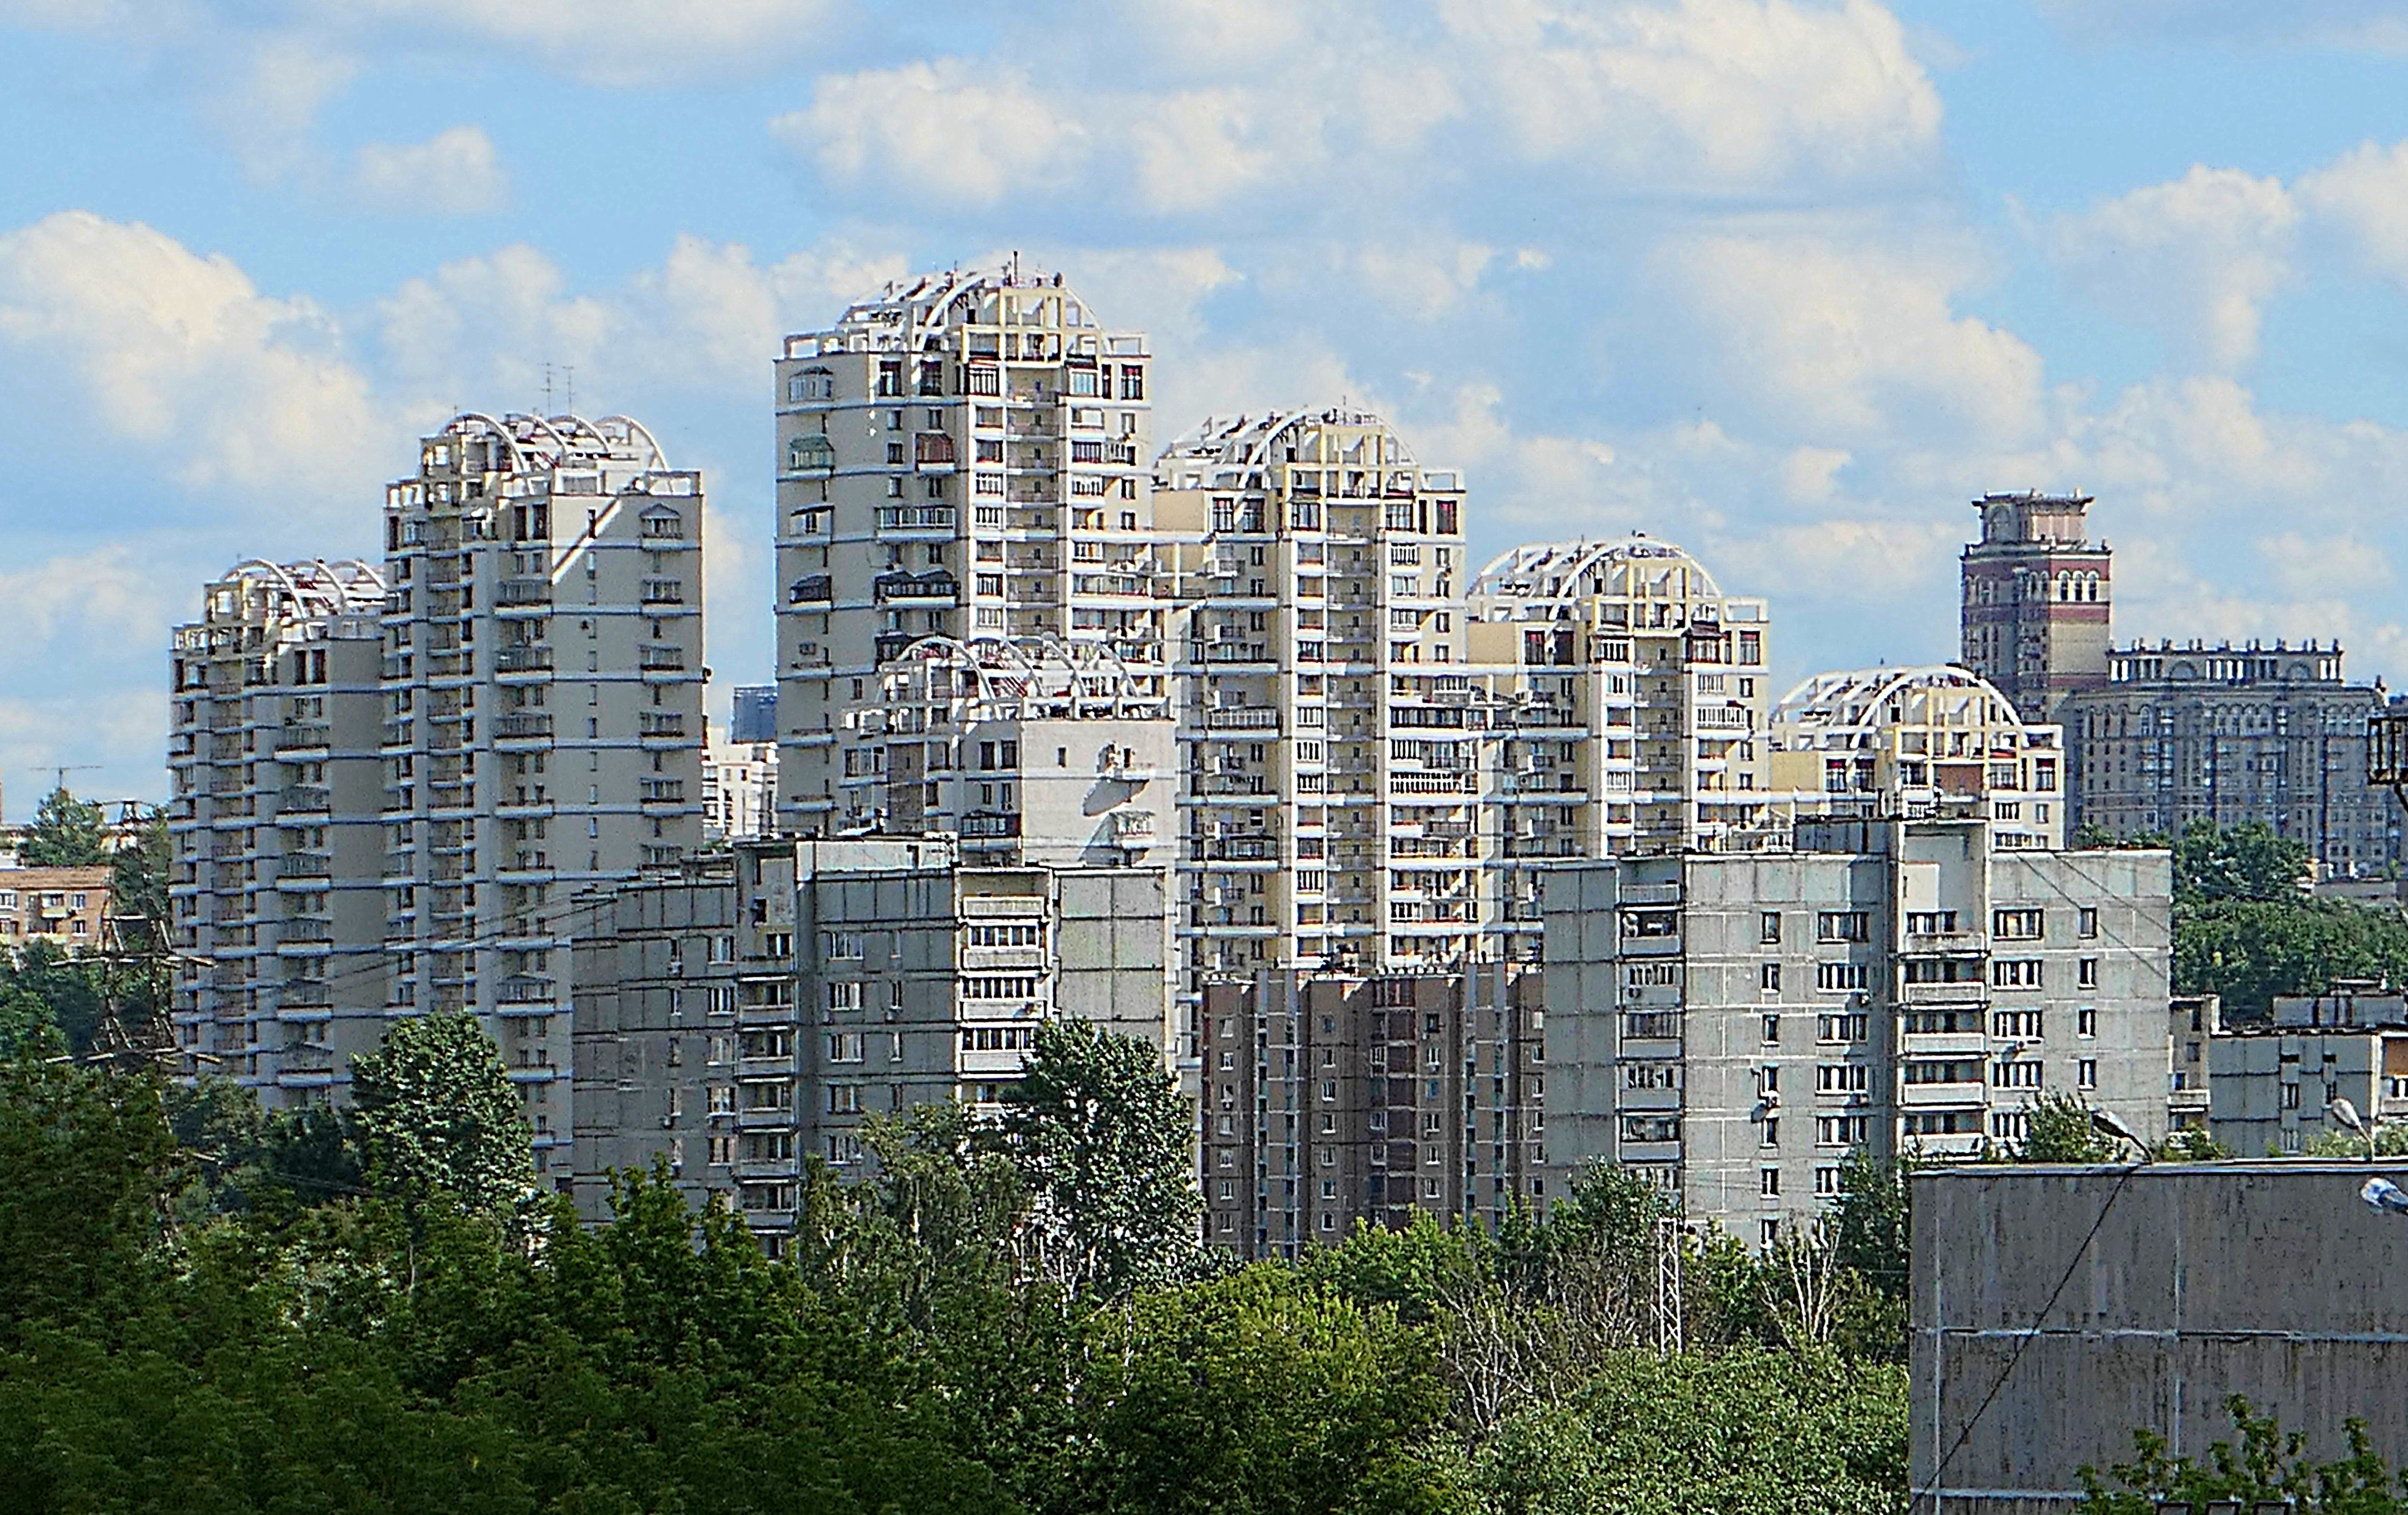 Вид с Поклонной горы на здания у Мосфильмовского пруда. Фото Морошкина В.В.